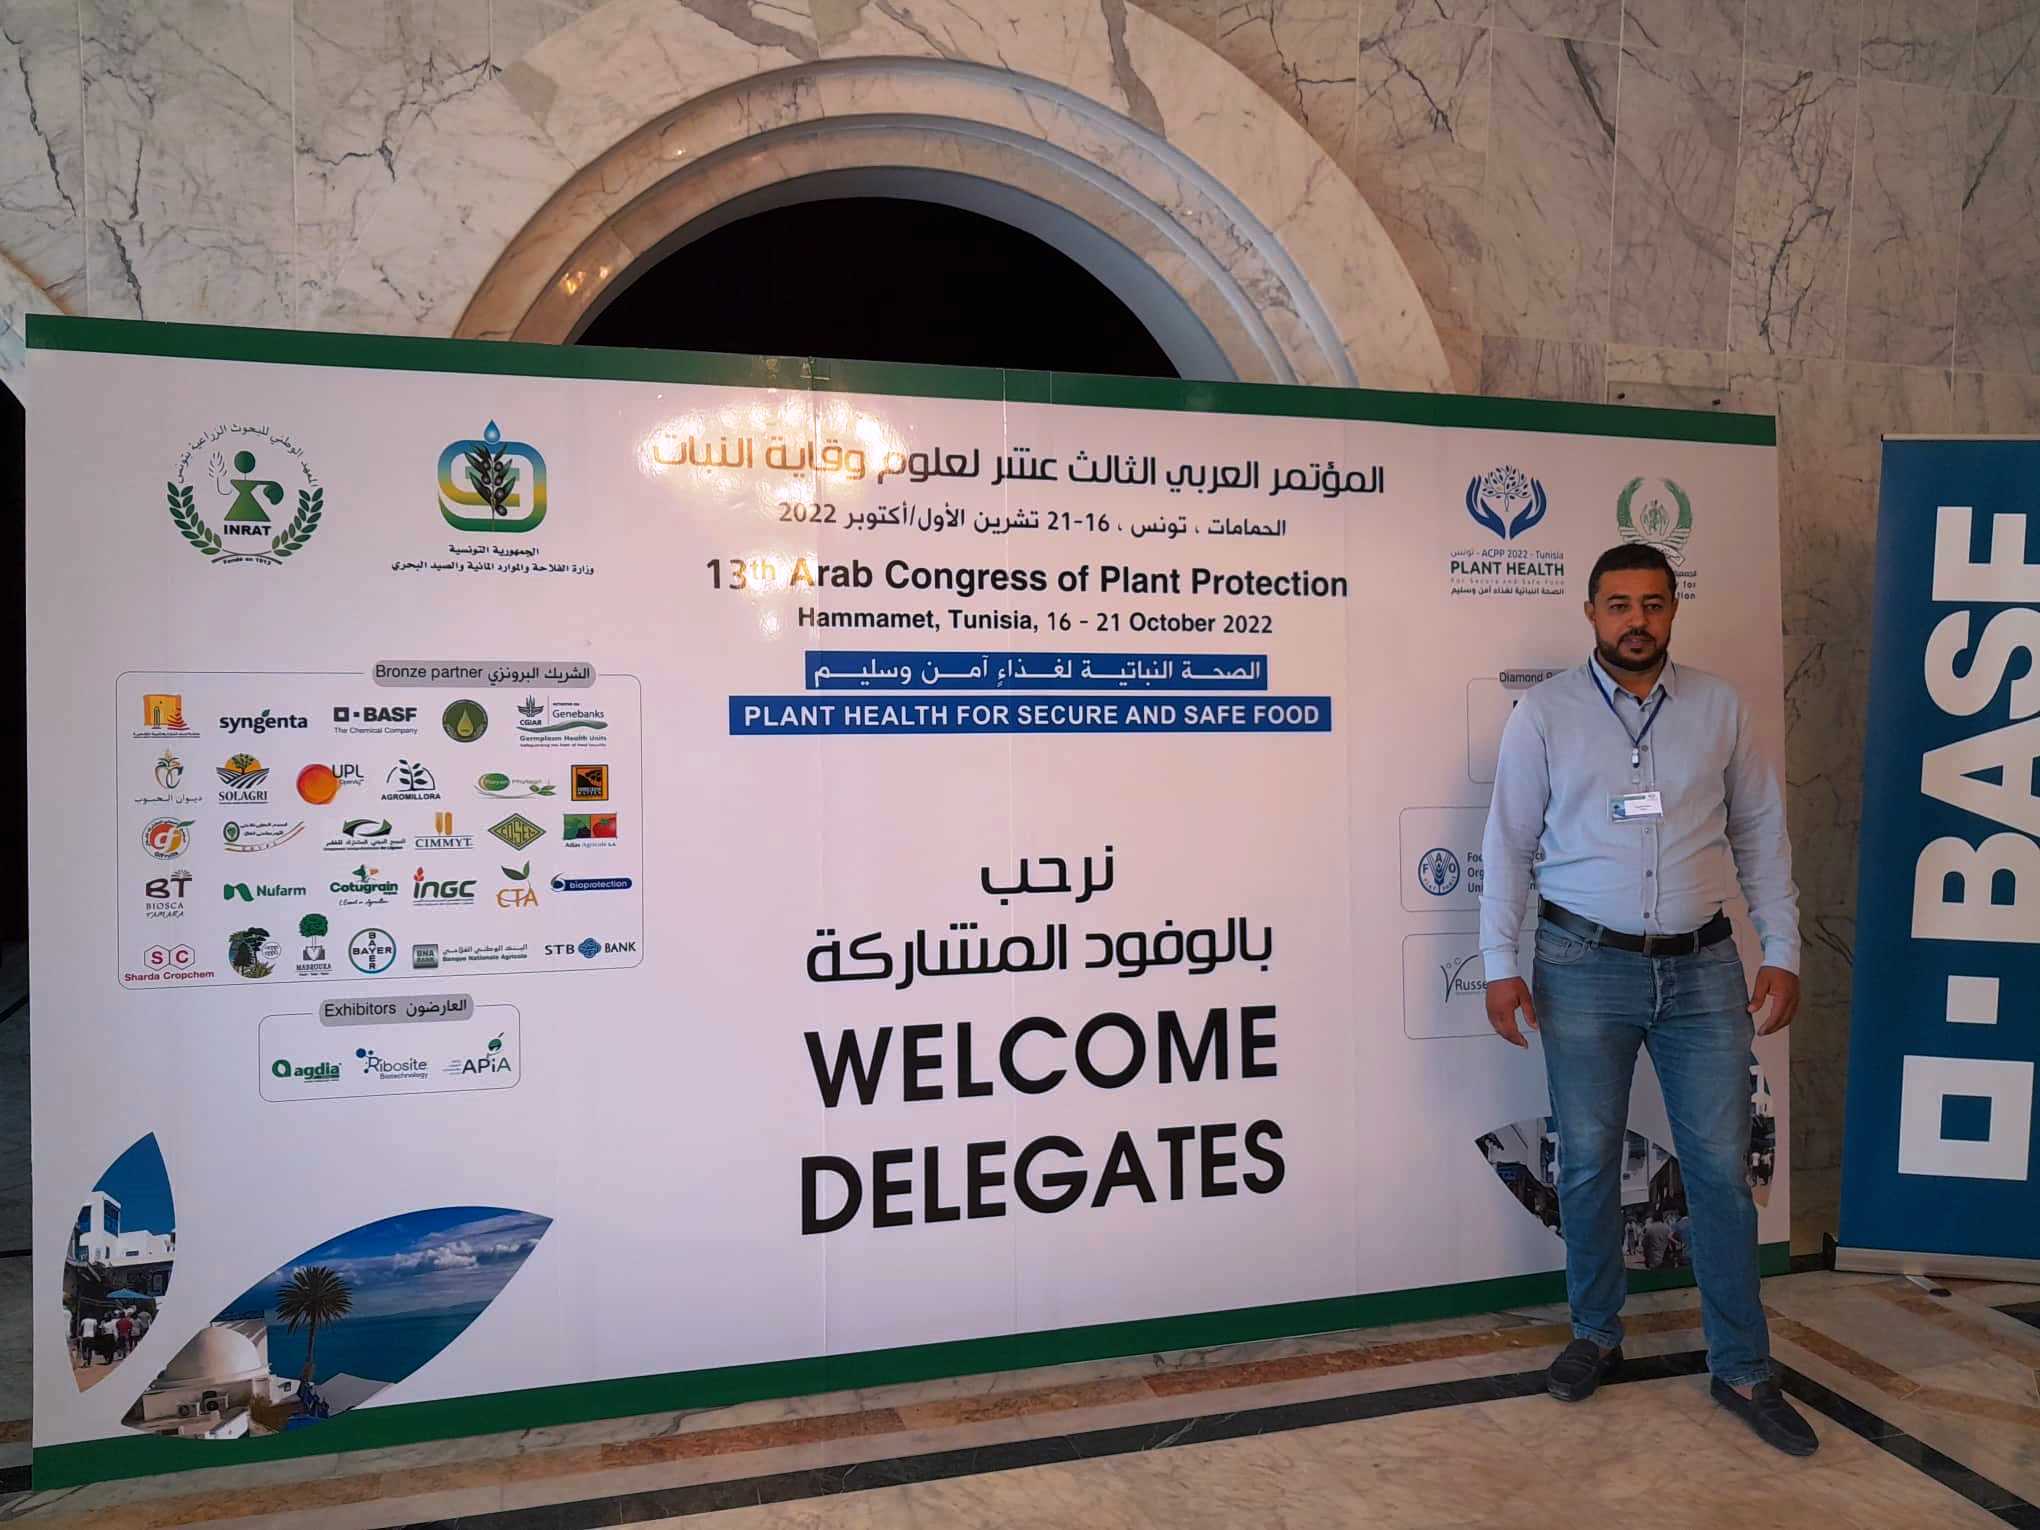 La participation du Centre technique des dattes à la 13éme Conférence arabe sur la protection des végétaux